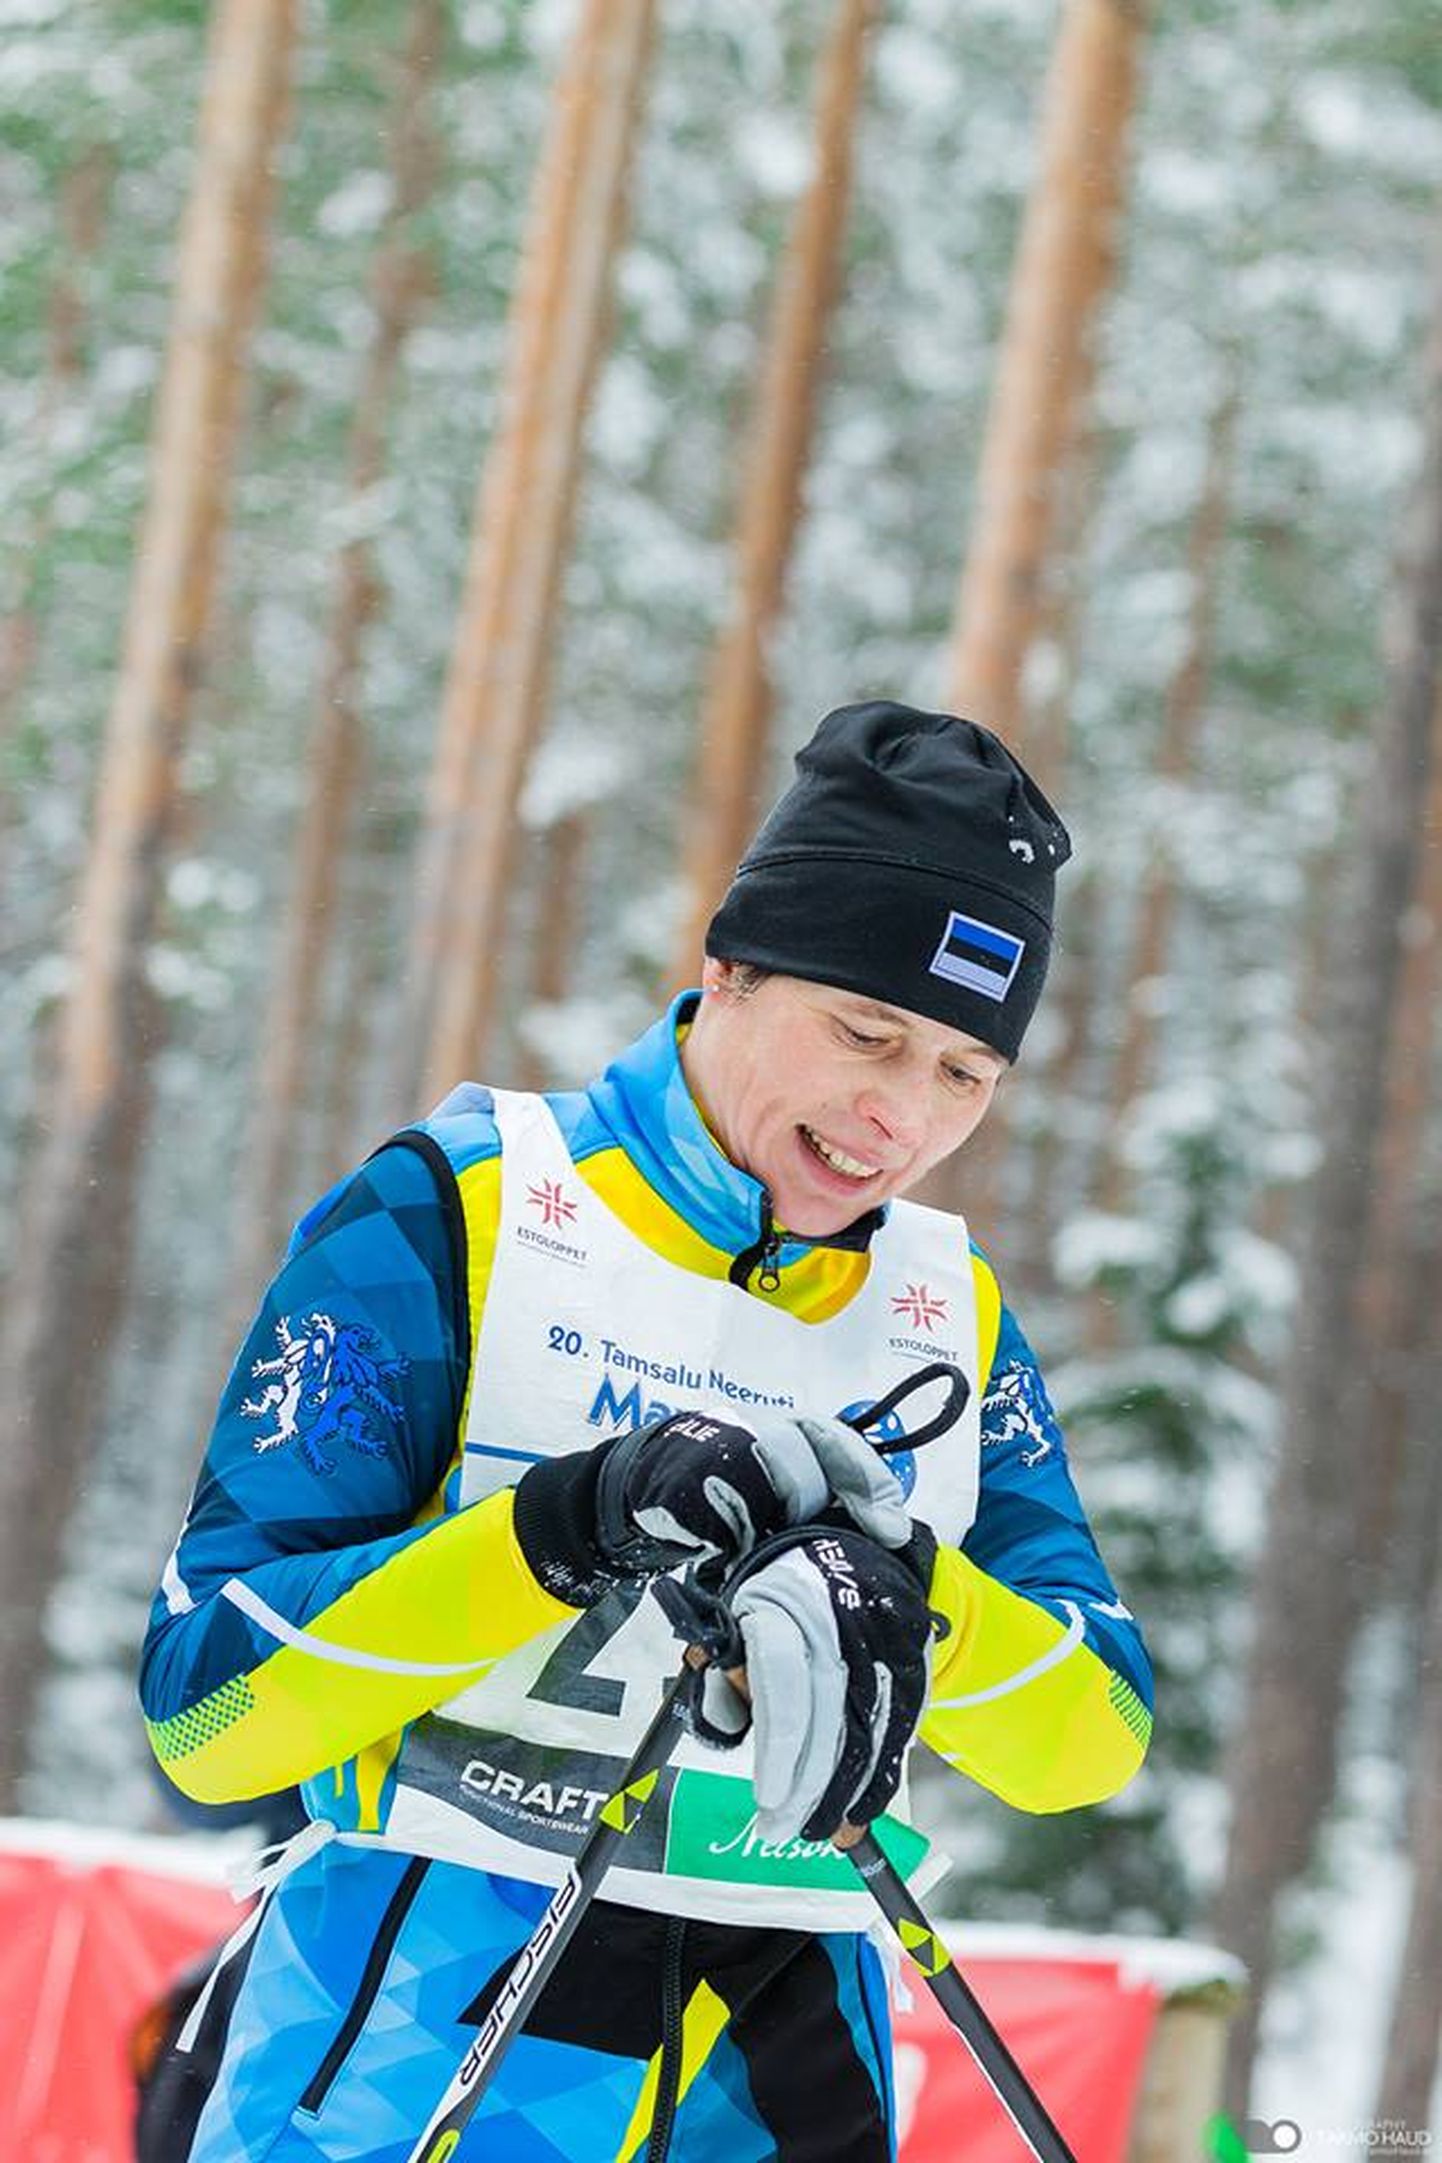 Керсти Кальюлайд участвовала в лыжной гонке в Паннъярве и прошлой зимой, когда из-за нехватки снега из Ляэне-Вирумаа в Паннъярве был перенесен марафон Тамсалу - Неэрути.

Тармо ХАУД/"ESTOLOPPET"